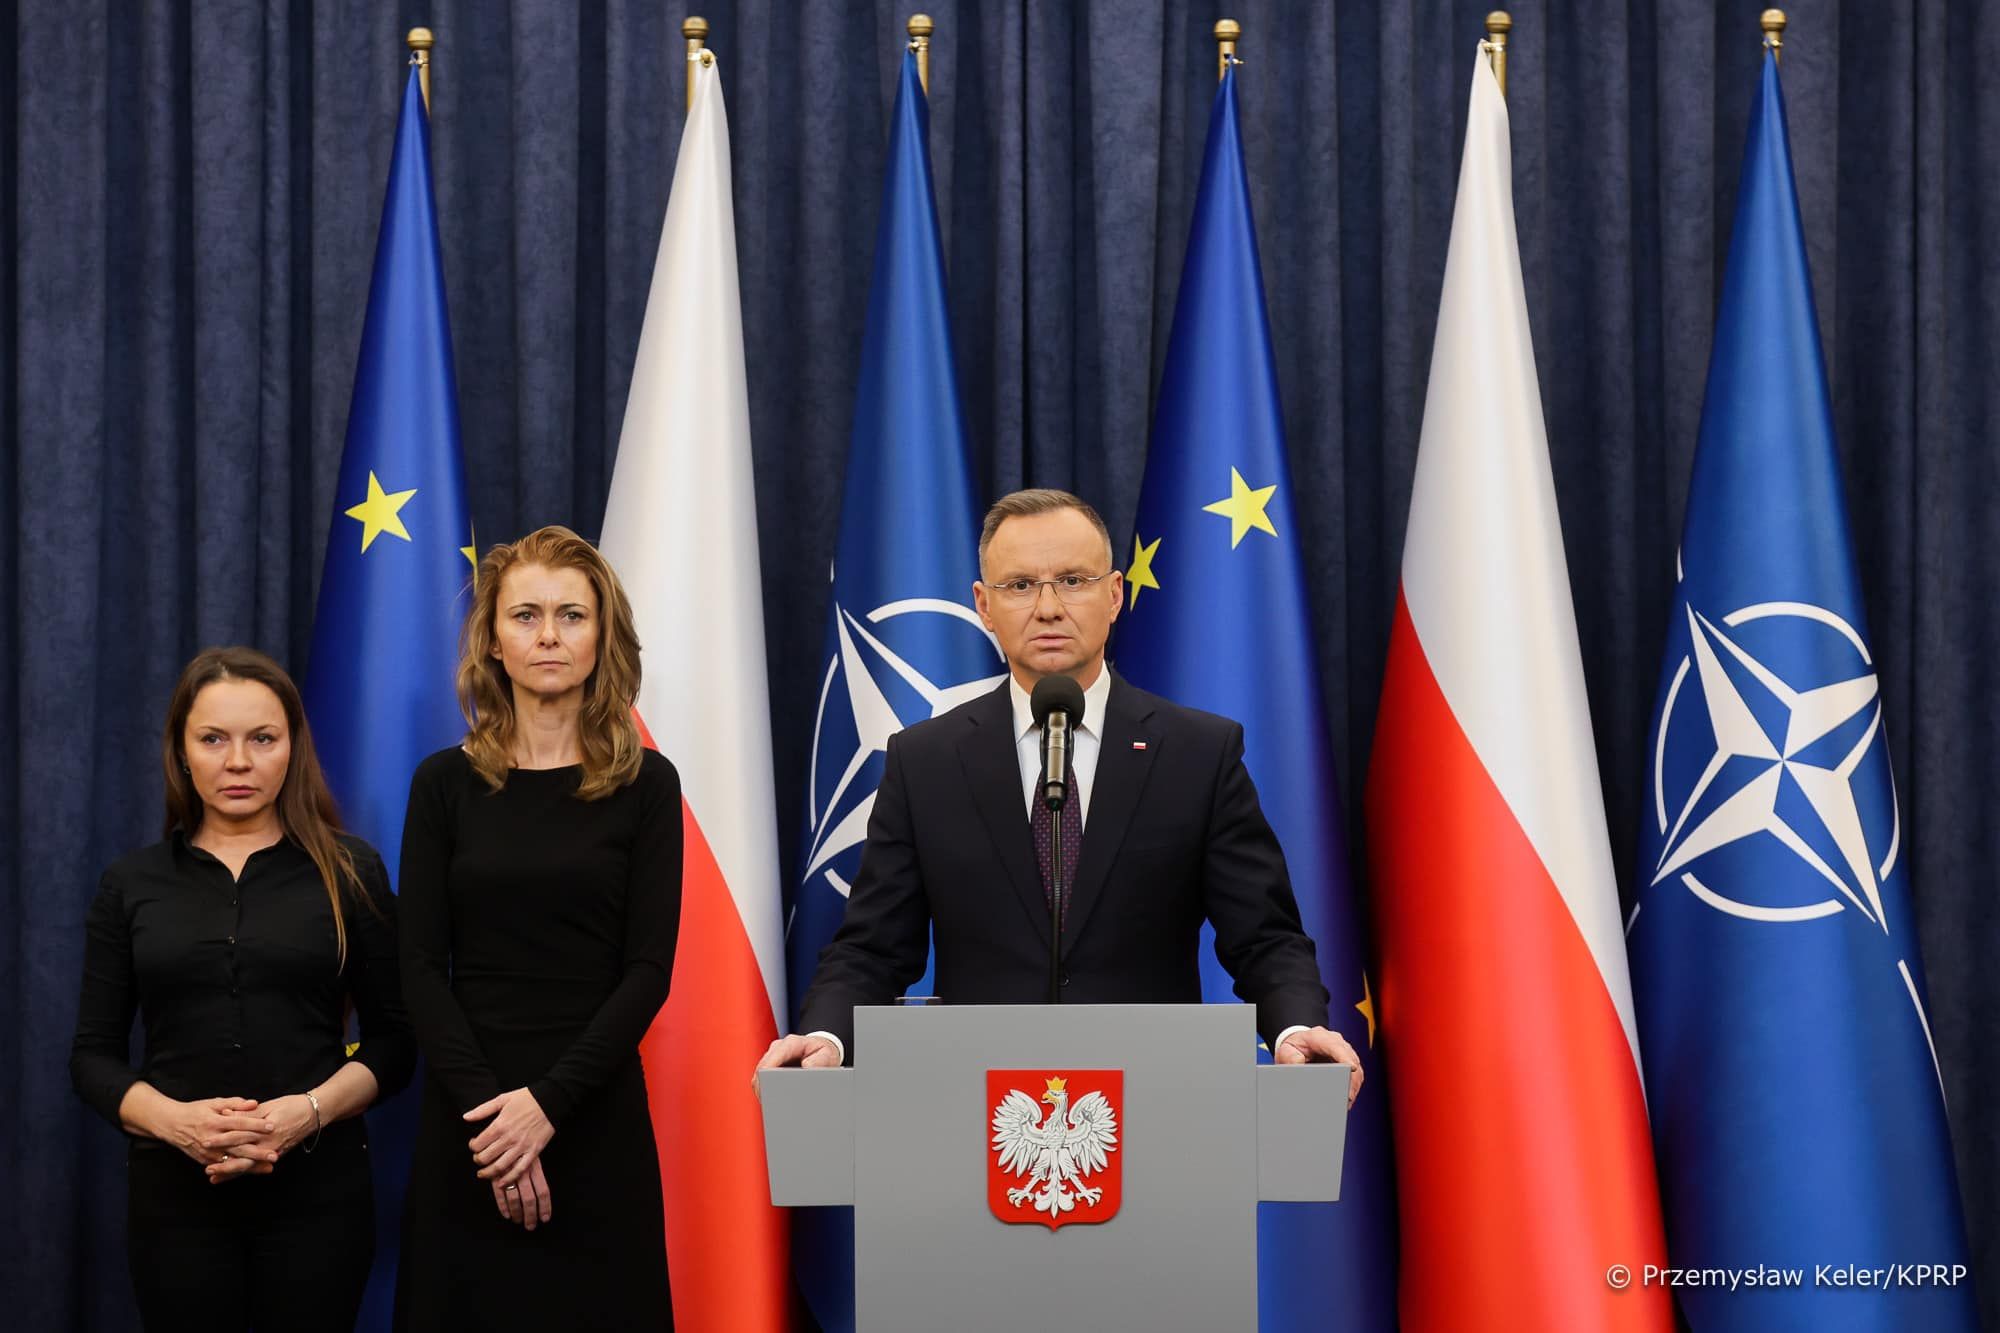 Депутати від правлячої проєвропейської коаліції Польщі розкритикували "дурну" заяву Дуди про Крим.